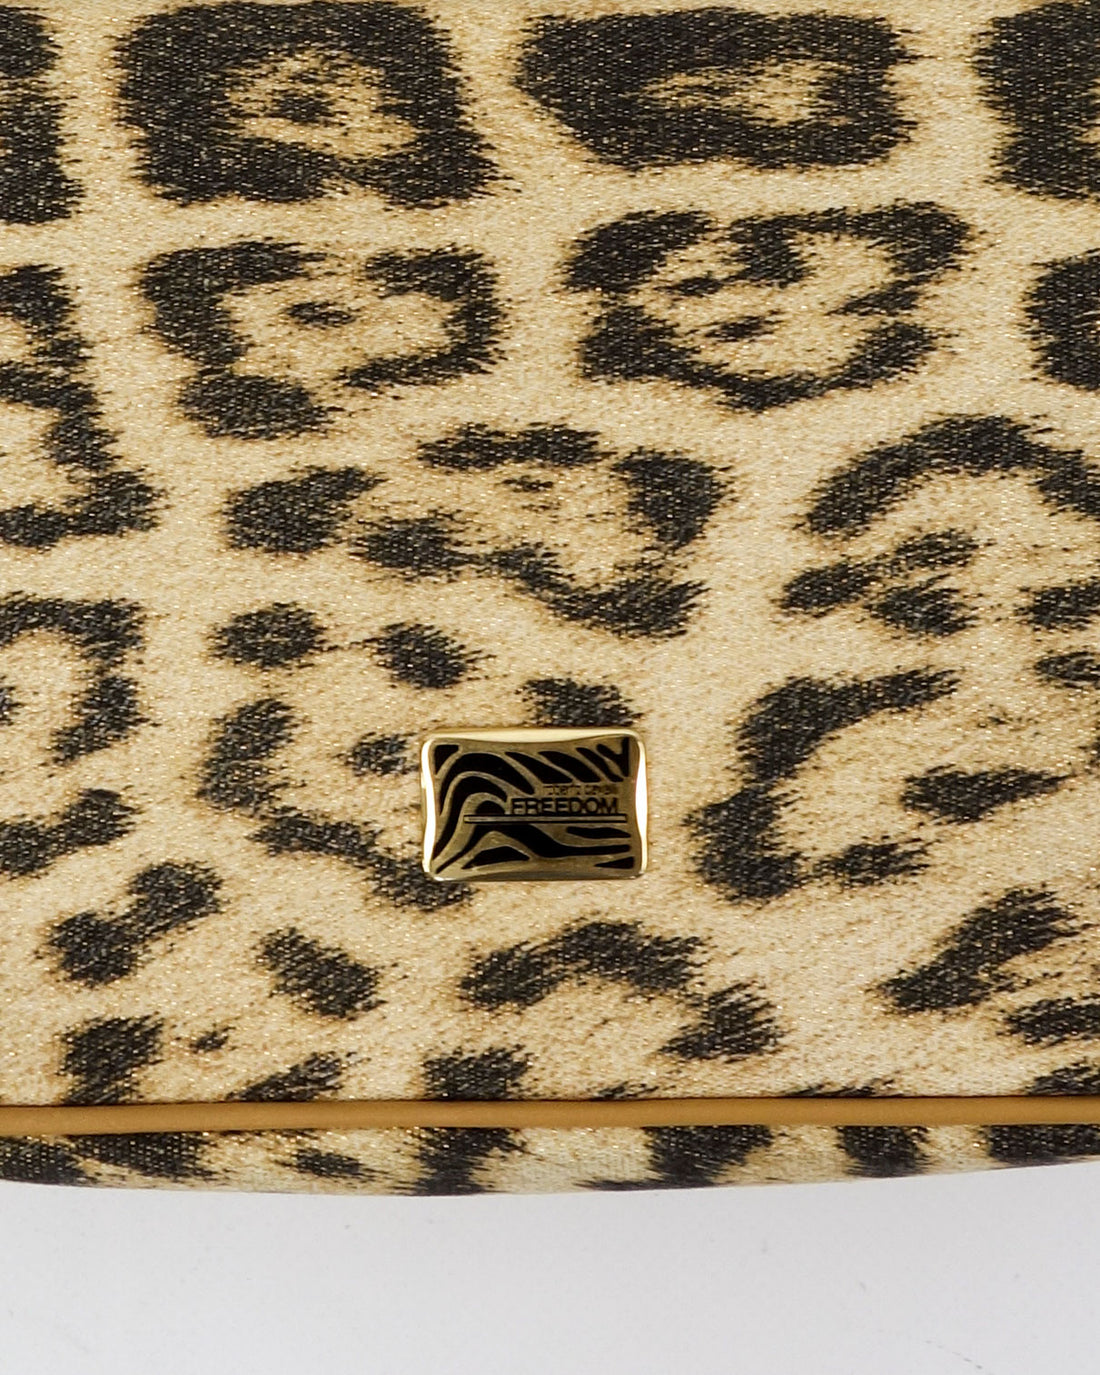 Cavalli Freedom Cheetah Print Leather Bag 2000's – Vintage TTS